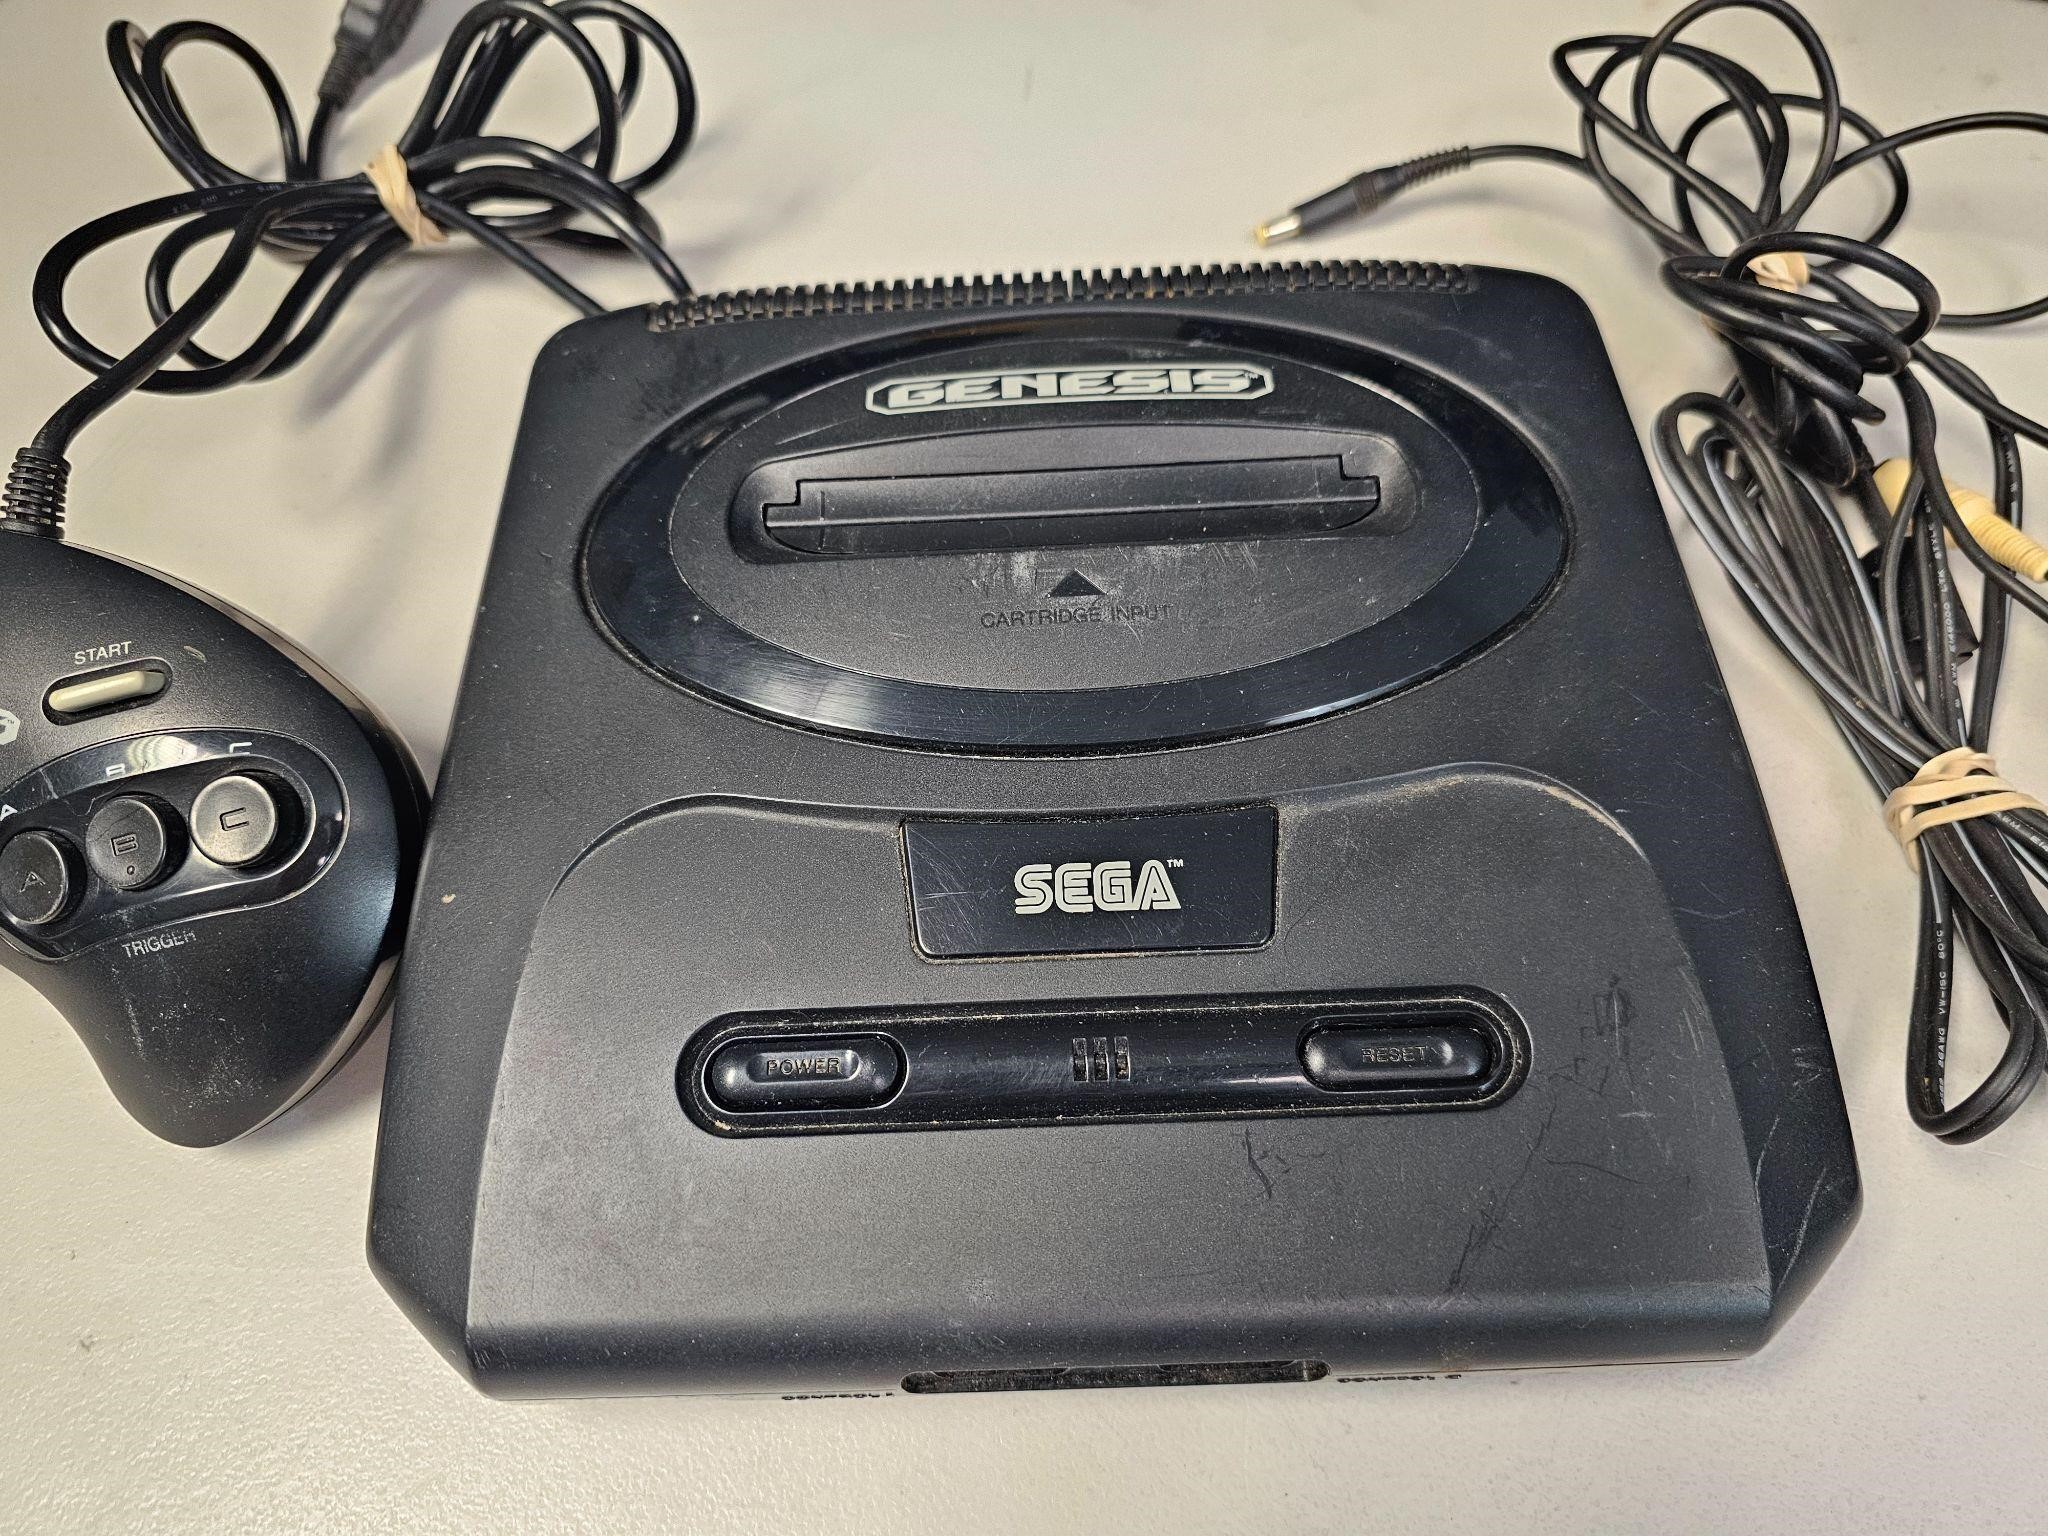 Sega Genesis model 2